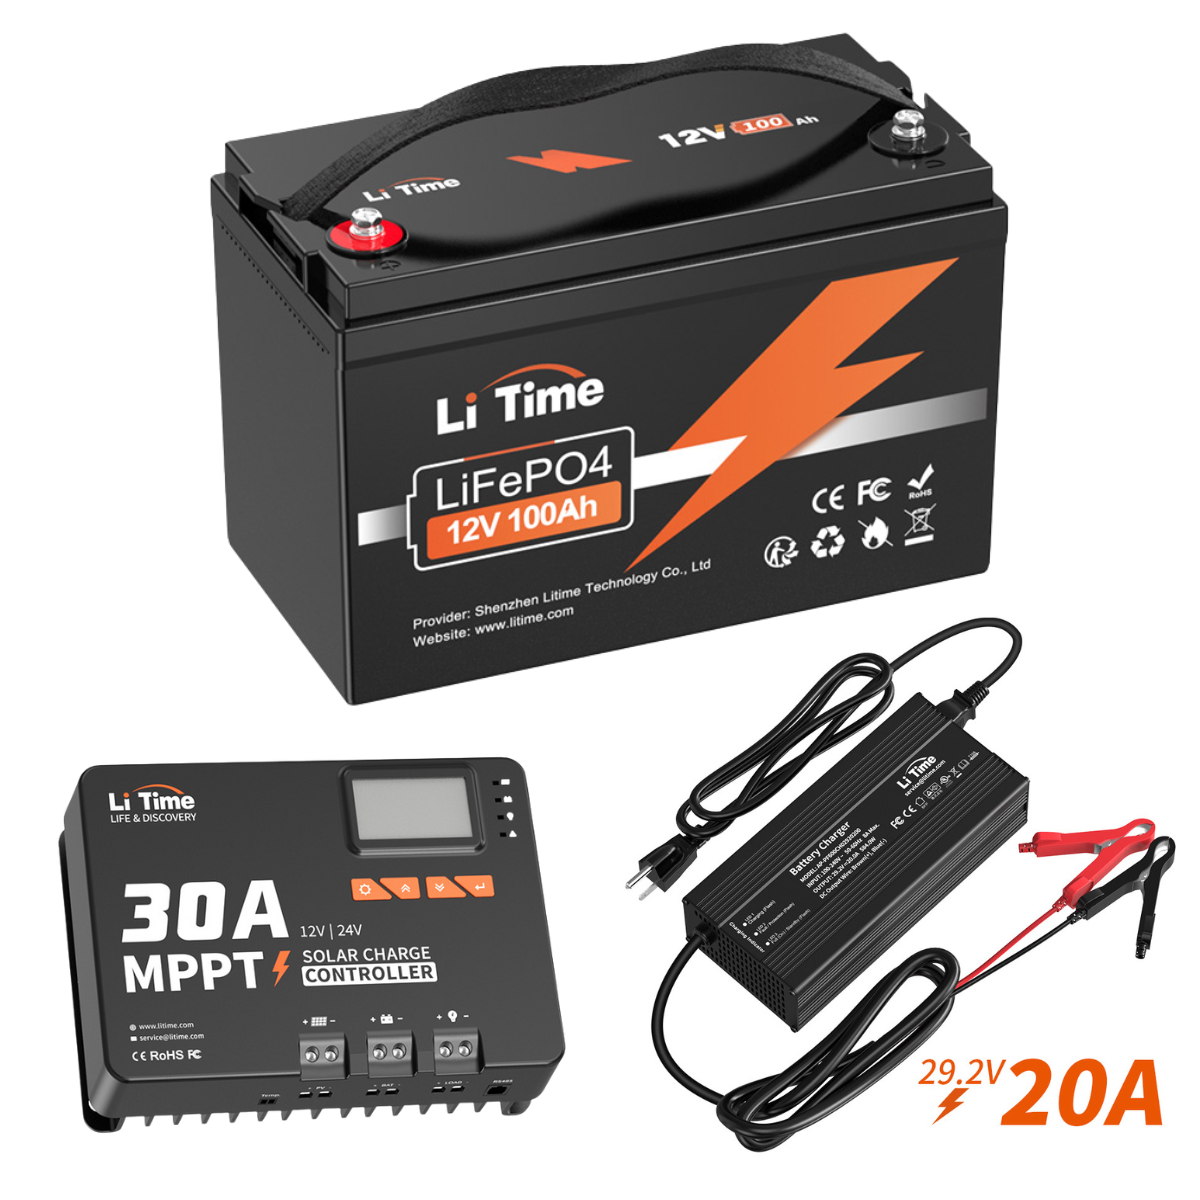 Batterie LiTime 24V 100Ah Lithium LiFePO4